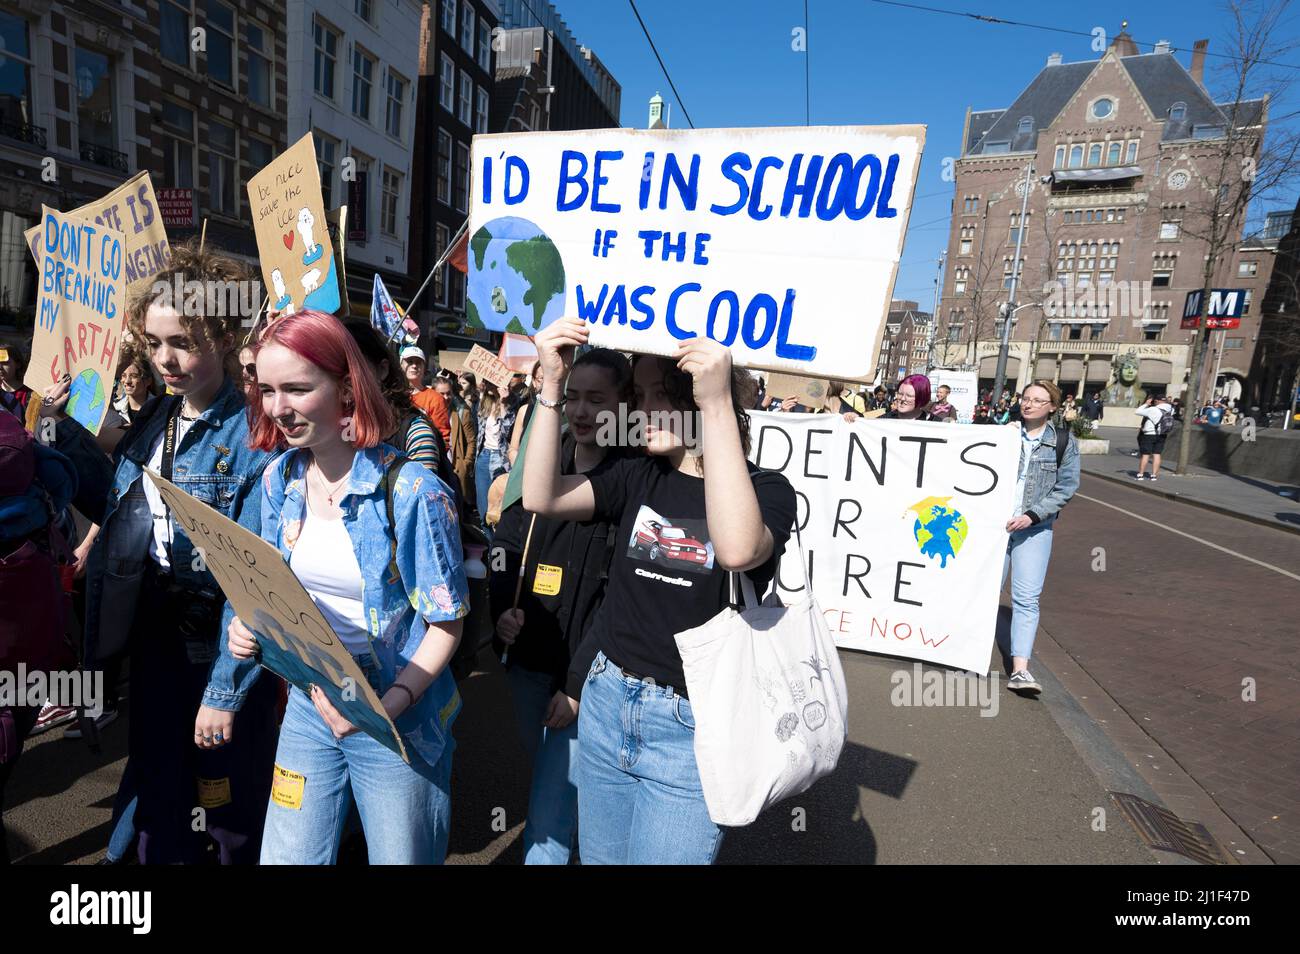 AMSTERDAM - Klimaatactiegroepen en sympathizanten nemen deel aan een protestmars tegen vervuilende bedrijven. De actievoerders werden dat bedrijven in 2030 zoveel mogelijk klimaatneutraal zijn. ANP EVERT ELZINGA Stockfoto